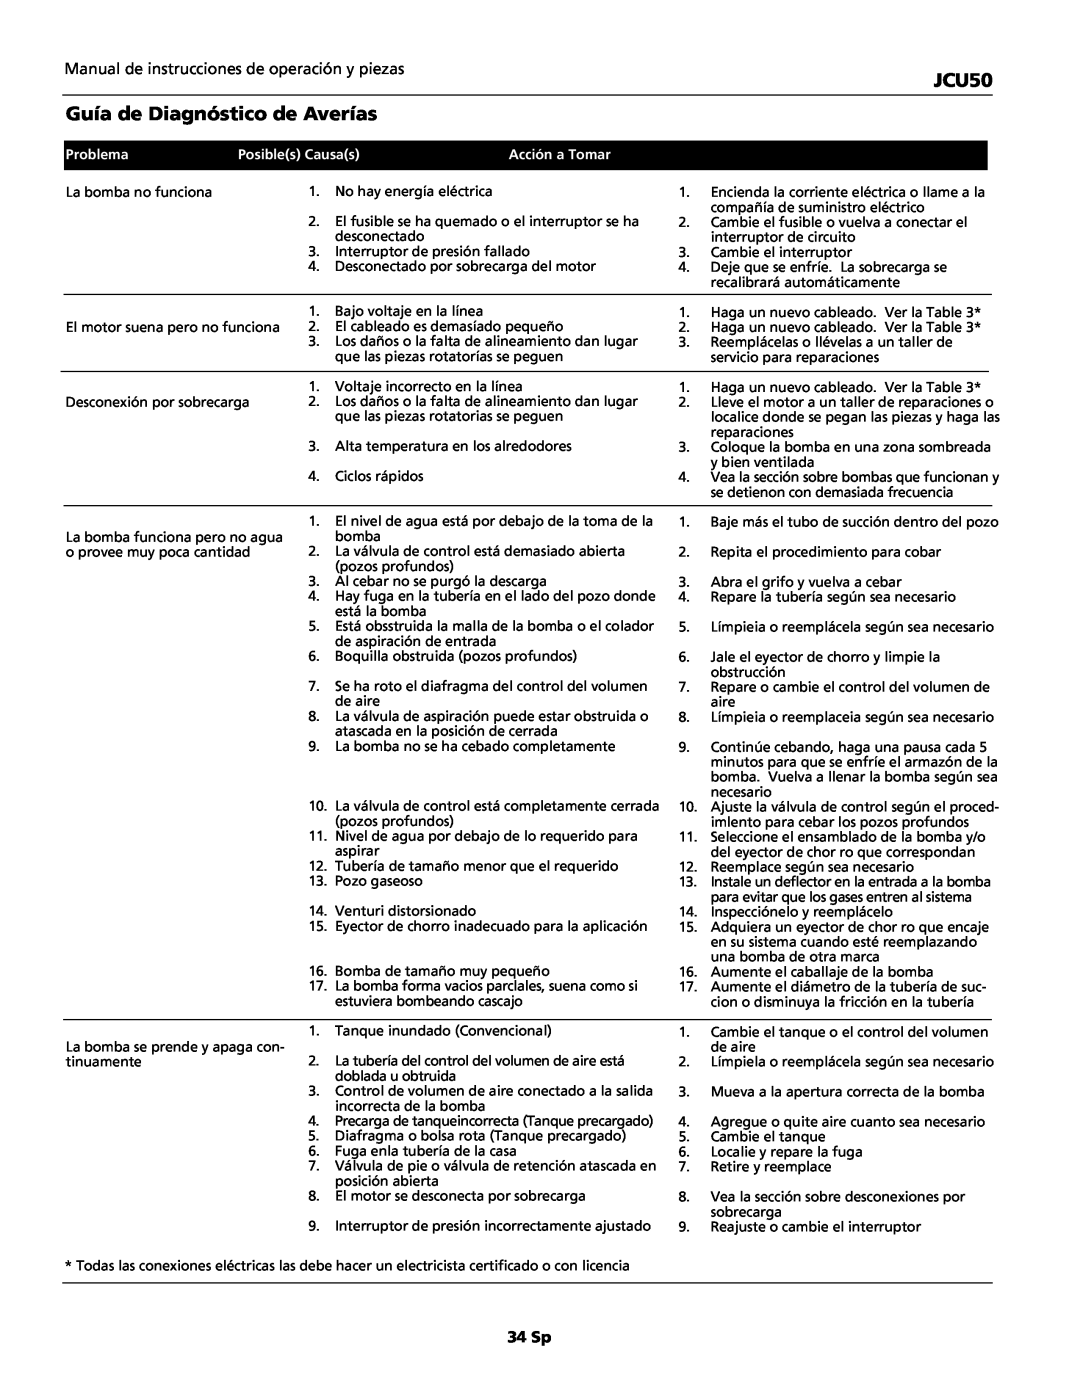 Wayne JCU50 instruction manual Guía de Diagnóstico de Averías, Problema, Posibles Causas, Acción a Tomar 